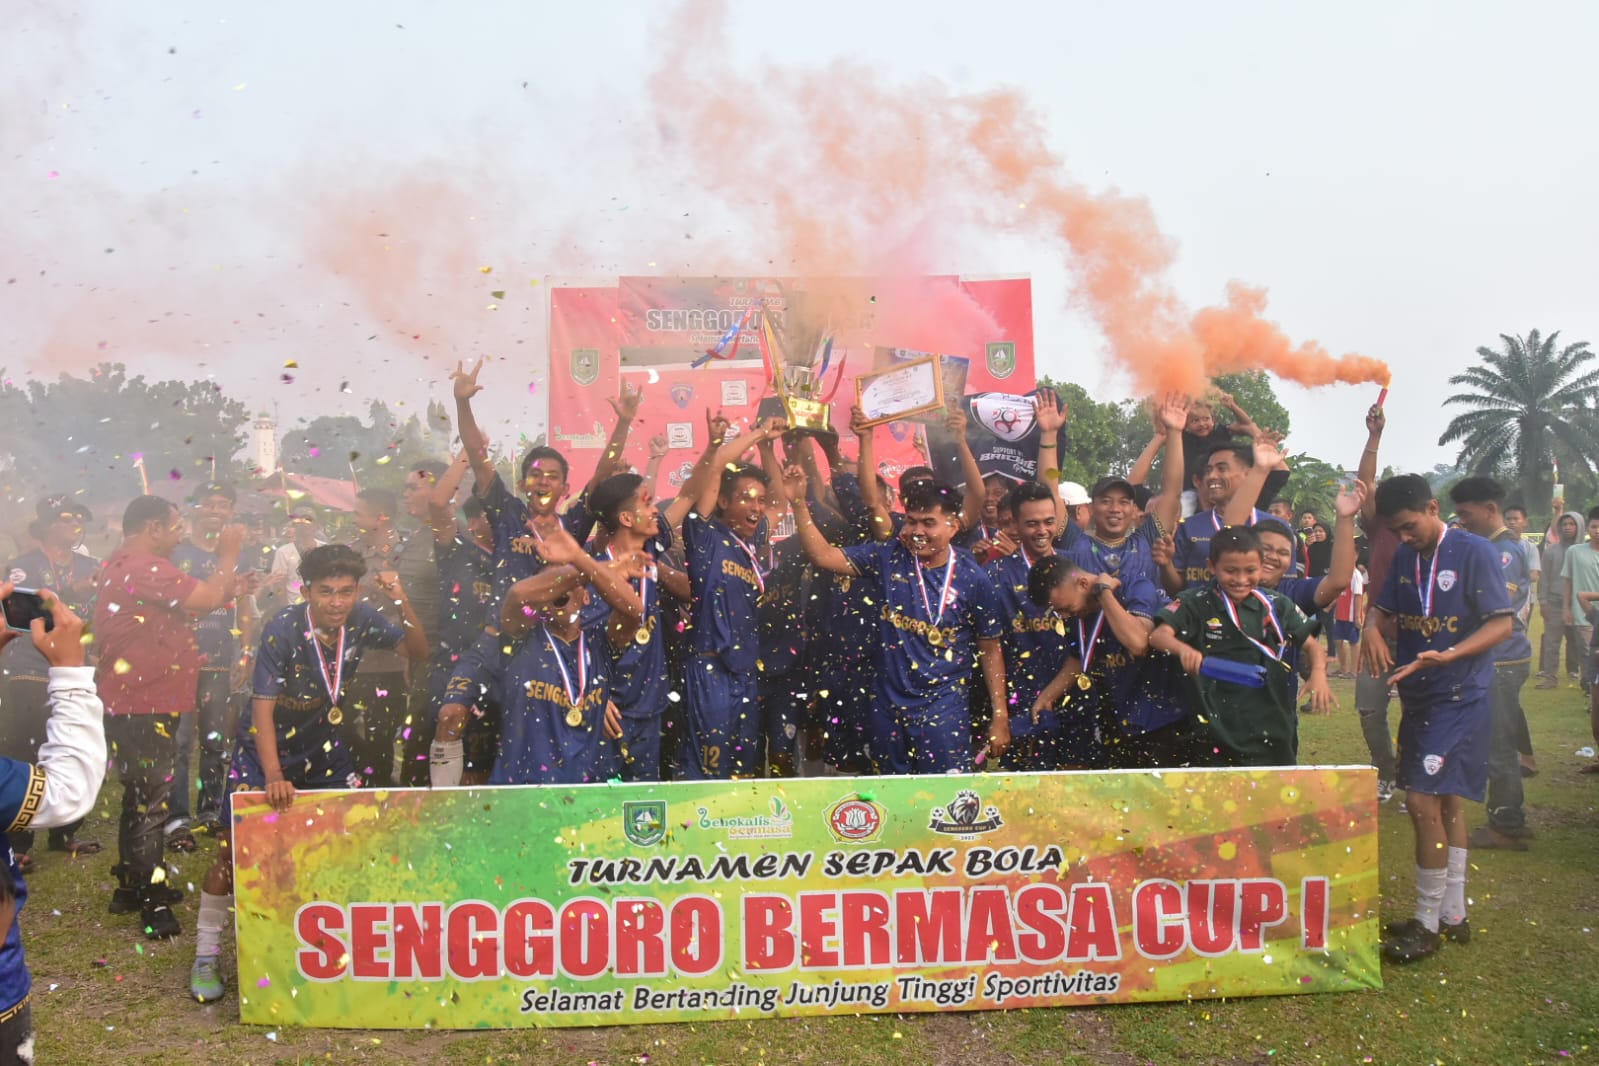 Juara Turnamen Sepak Bola Bermasa Cup I